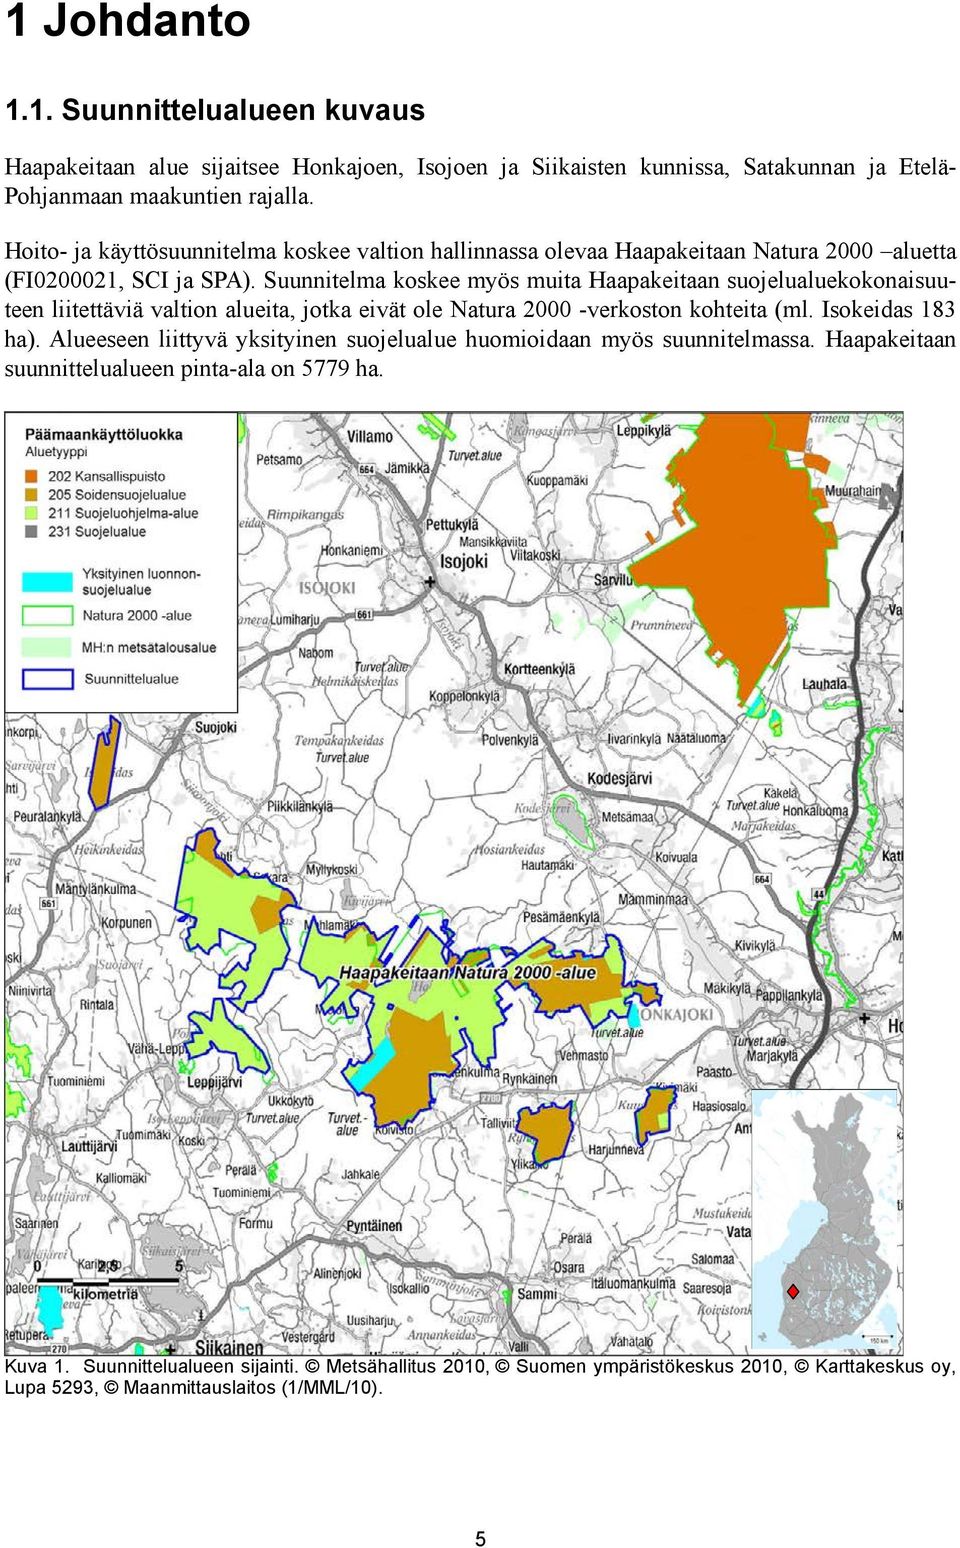 Suunnitelma koskee myös muita Haapakeitaan suojelualuekokonaisuuteen liitettäviä valtion alueita, jotka eivät ole Natura 2000 -verkoston kohteita (ml. Isokeidas 183 ha).